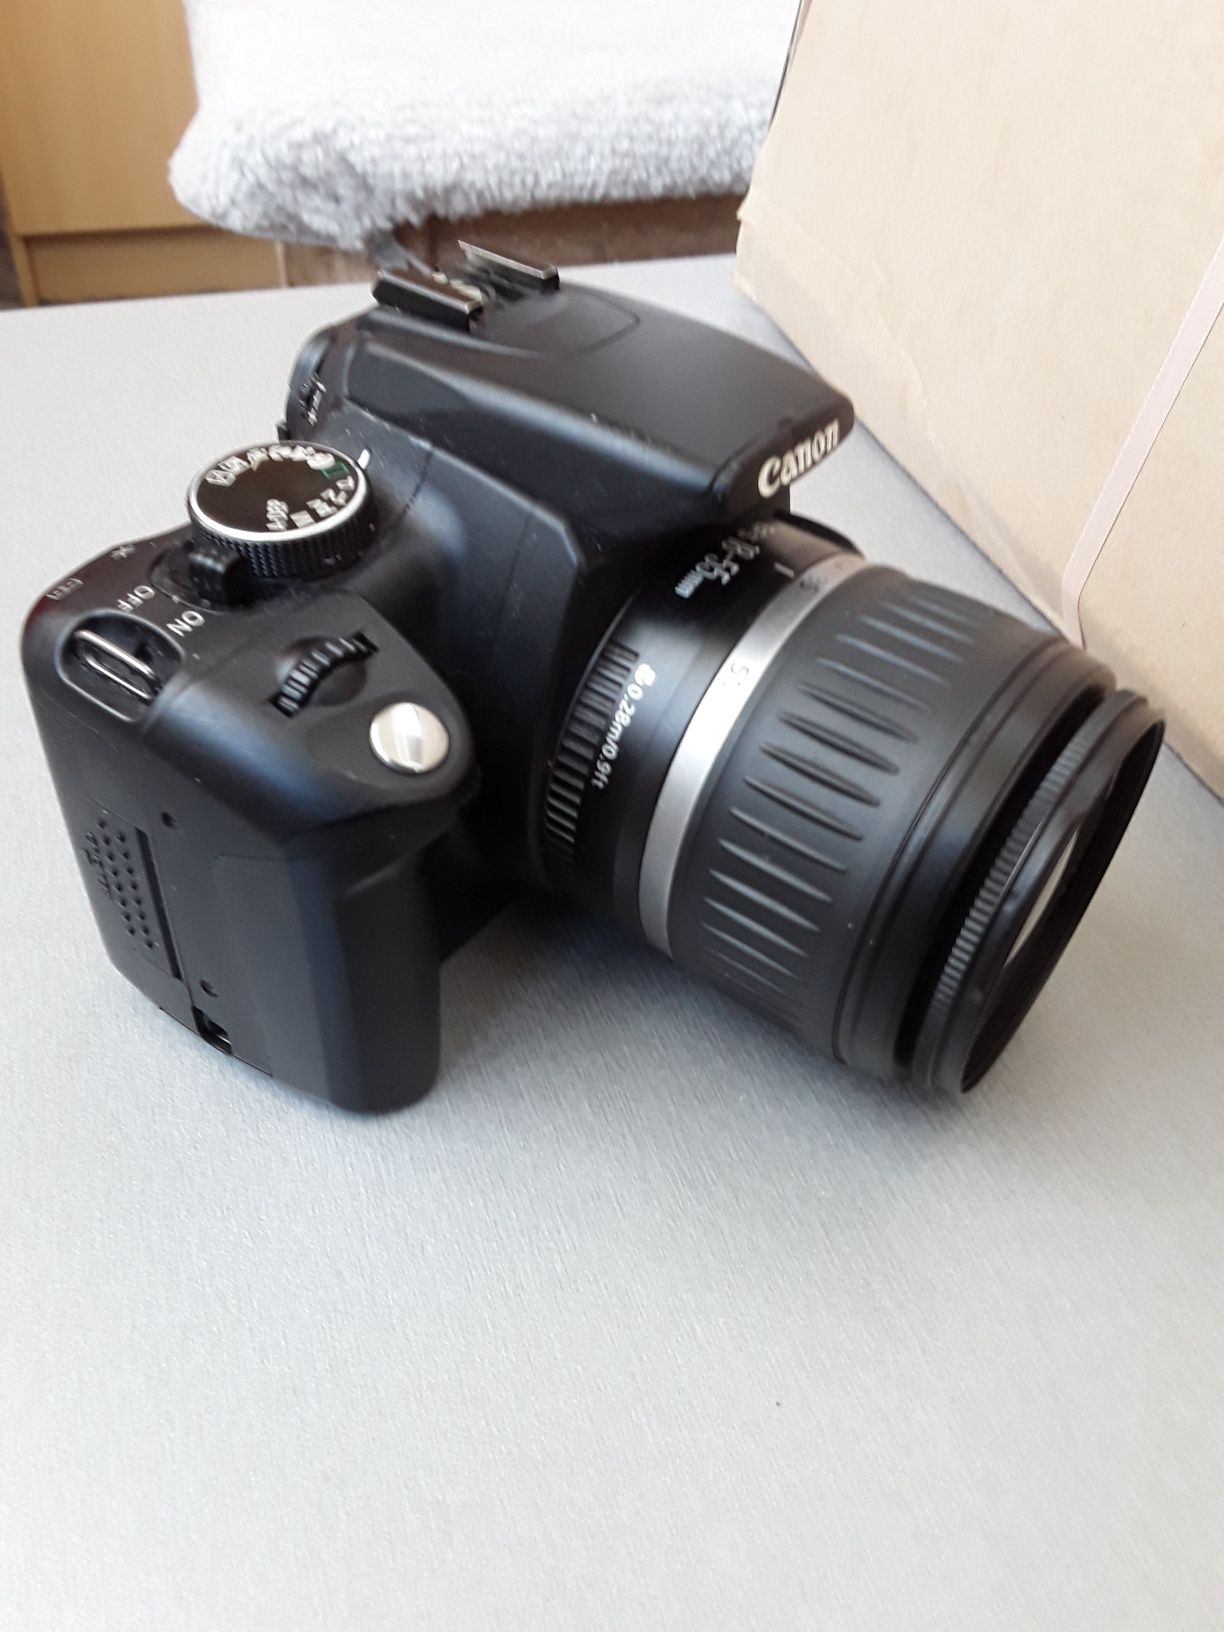 Camera Canon eos 350d